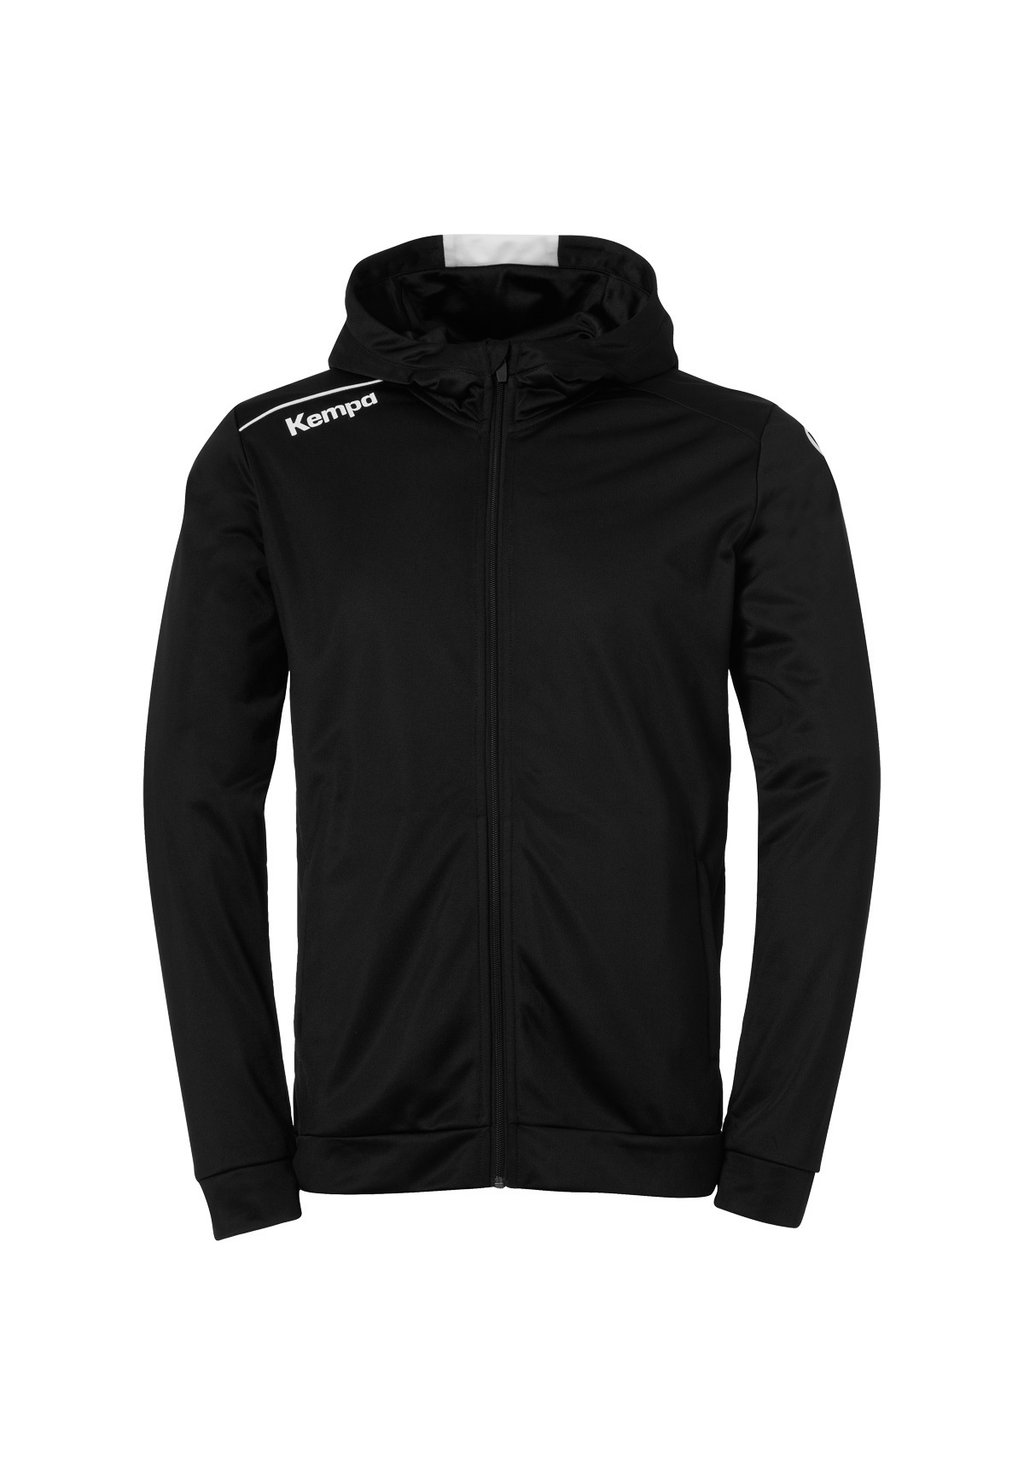 Тренировочная куртка PLAYER Kempa, цвет schwarz weiß